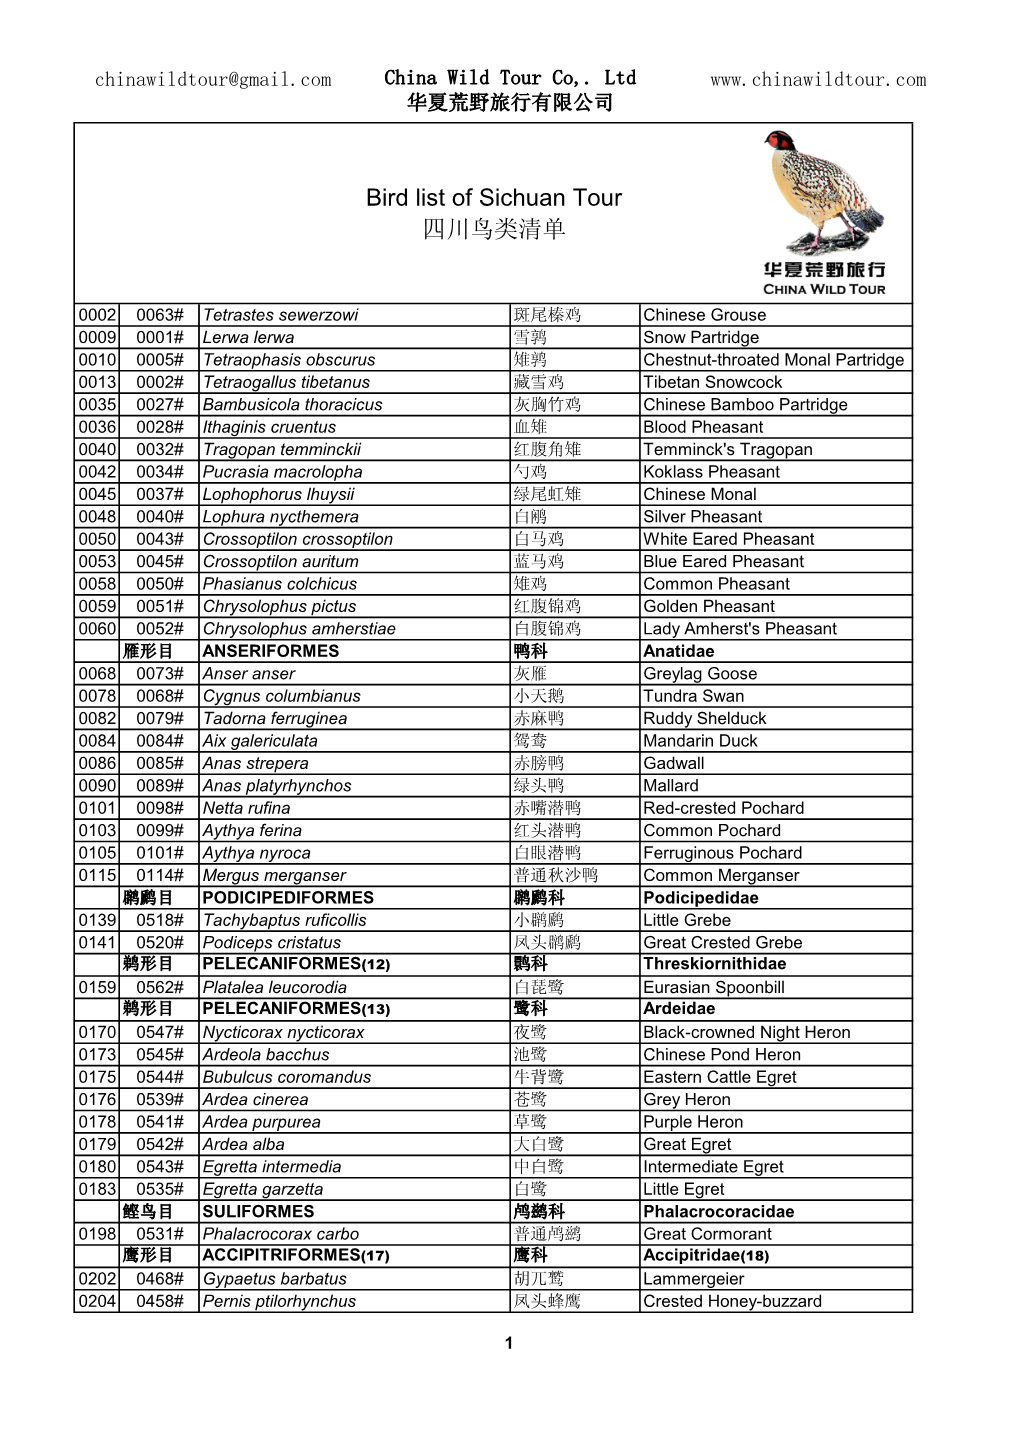 Bird List of Sichuan Tour 四川鸟类清单